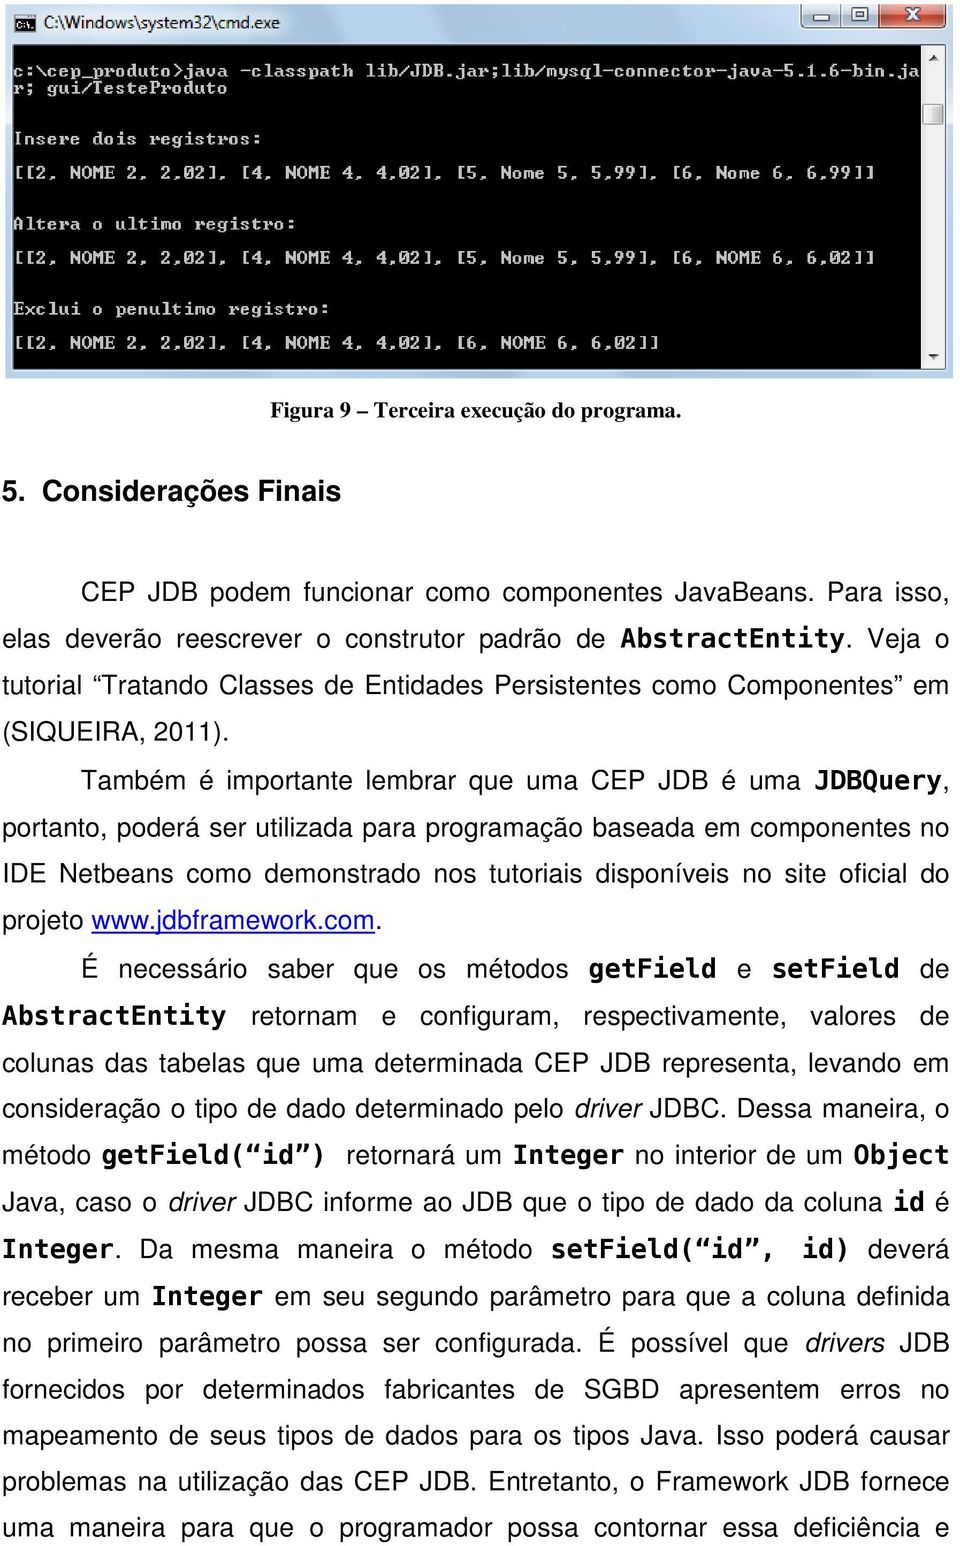 Também é importante lembrar que uma CEP JDB é uma JDBQuery, portanto, poderá ser utilizada para programação baseada em componentes no IDE Netbeans como demonstrado nos tutoriais disponíveis no site